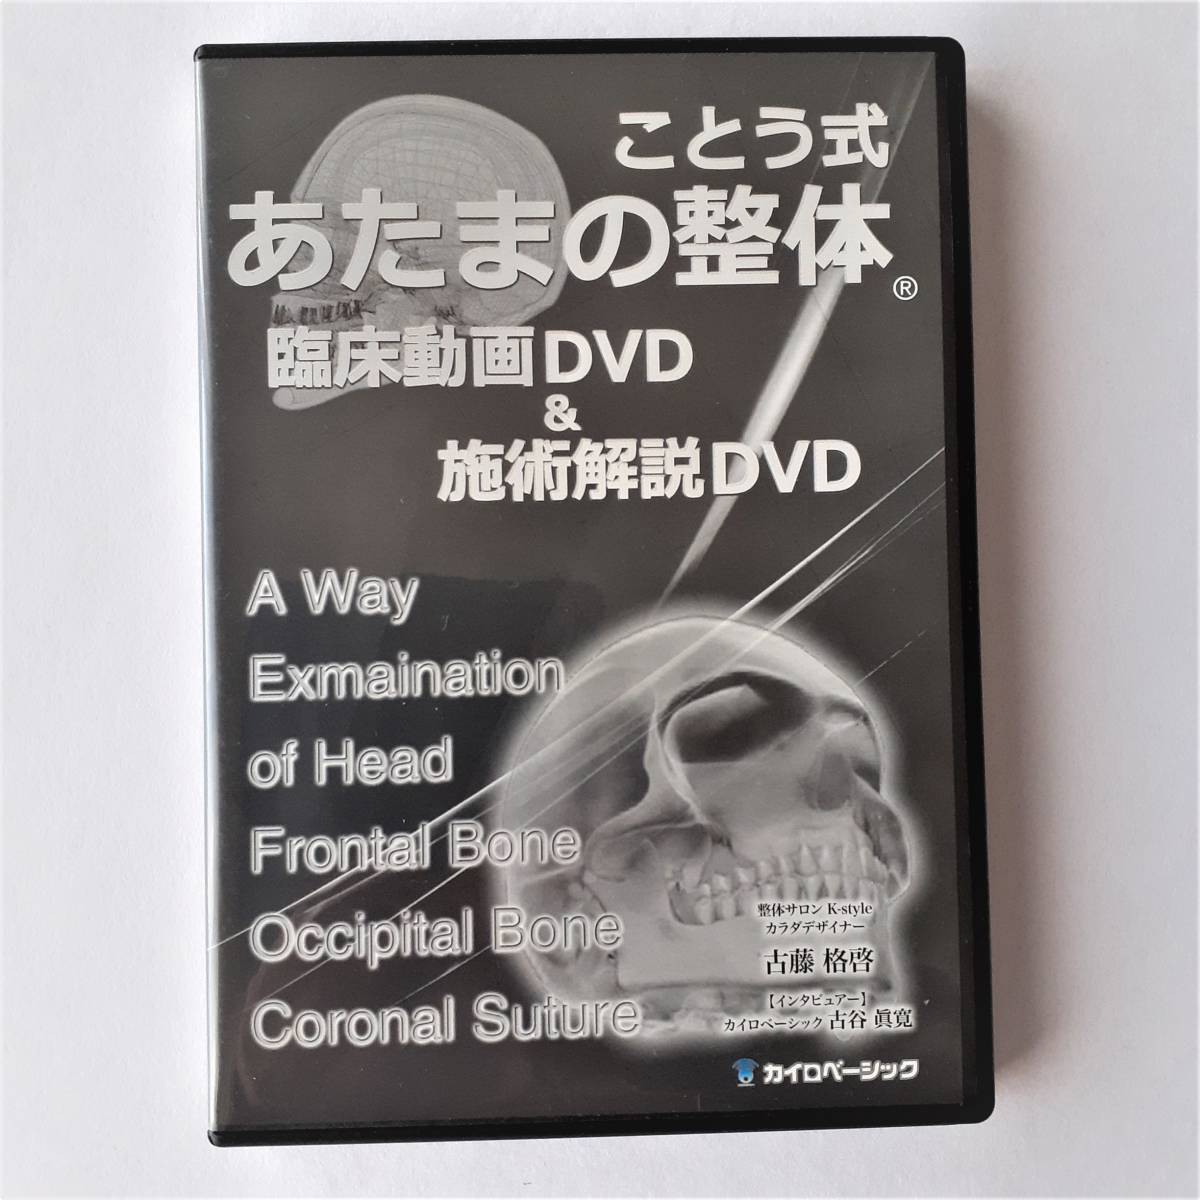 総代理店 古藤格啓のことう式あたま施術(R)THE GAME DVDフルセット - DVD